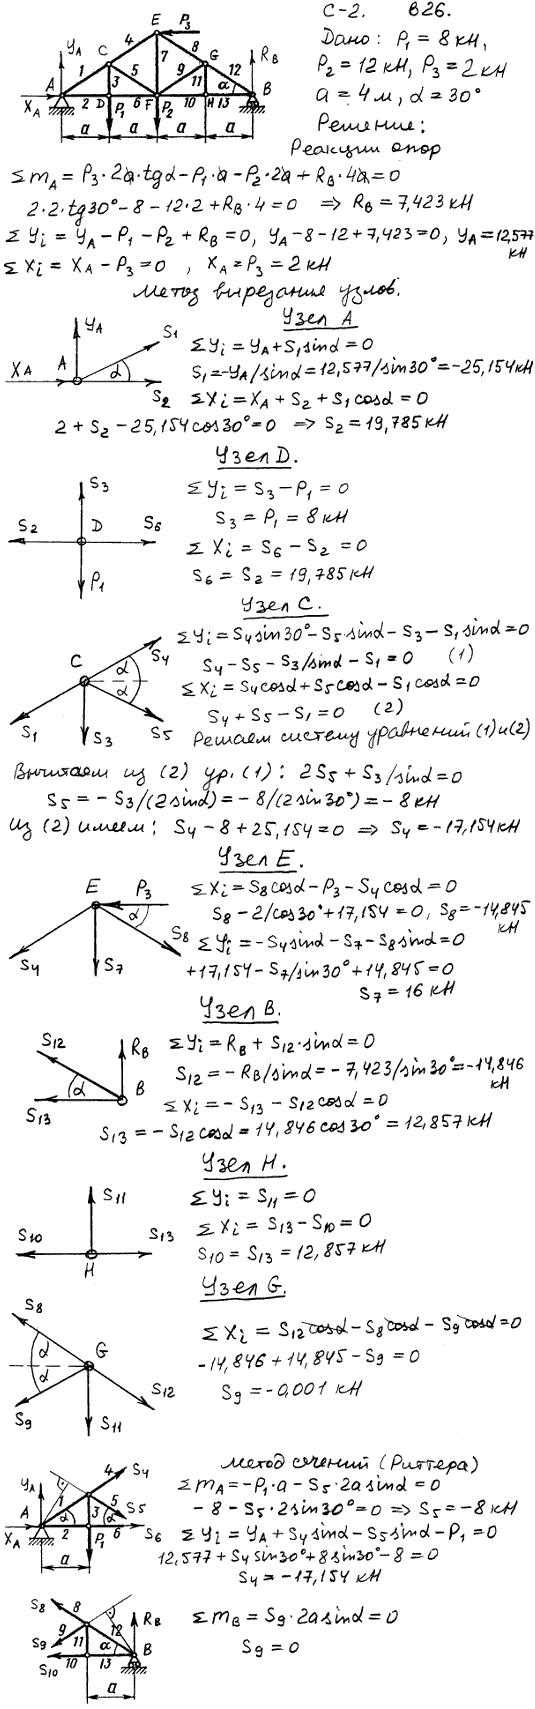 Задание C2 вариант 26. P1=8 кН, P2=12 кН, P3=2 кН, a=4 м, α=30 град, номер стержня 4, 5, 9.